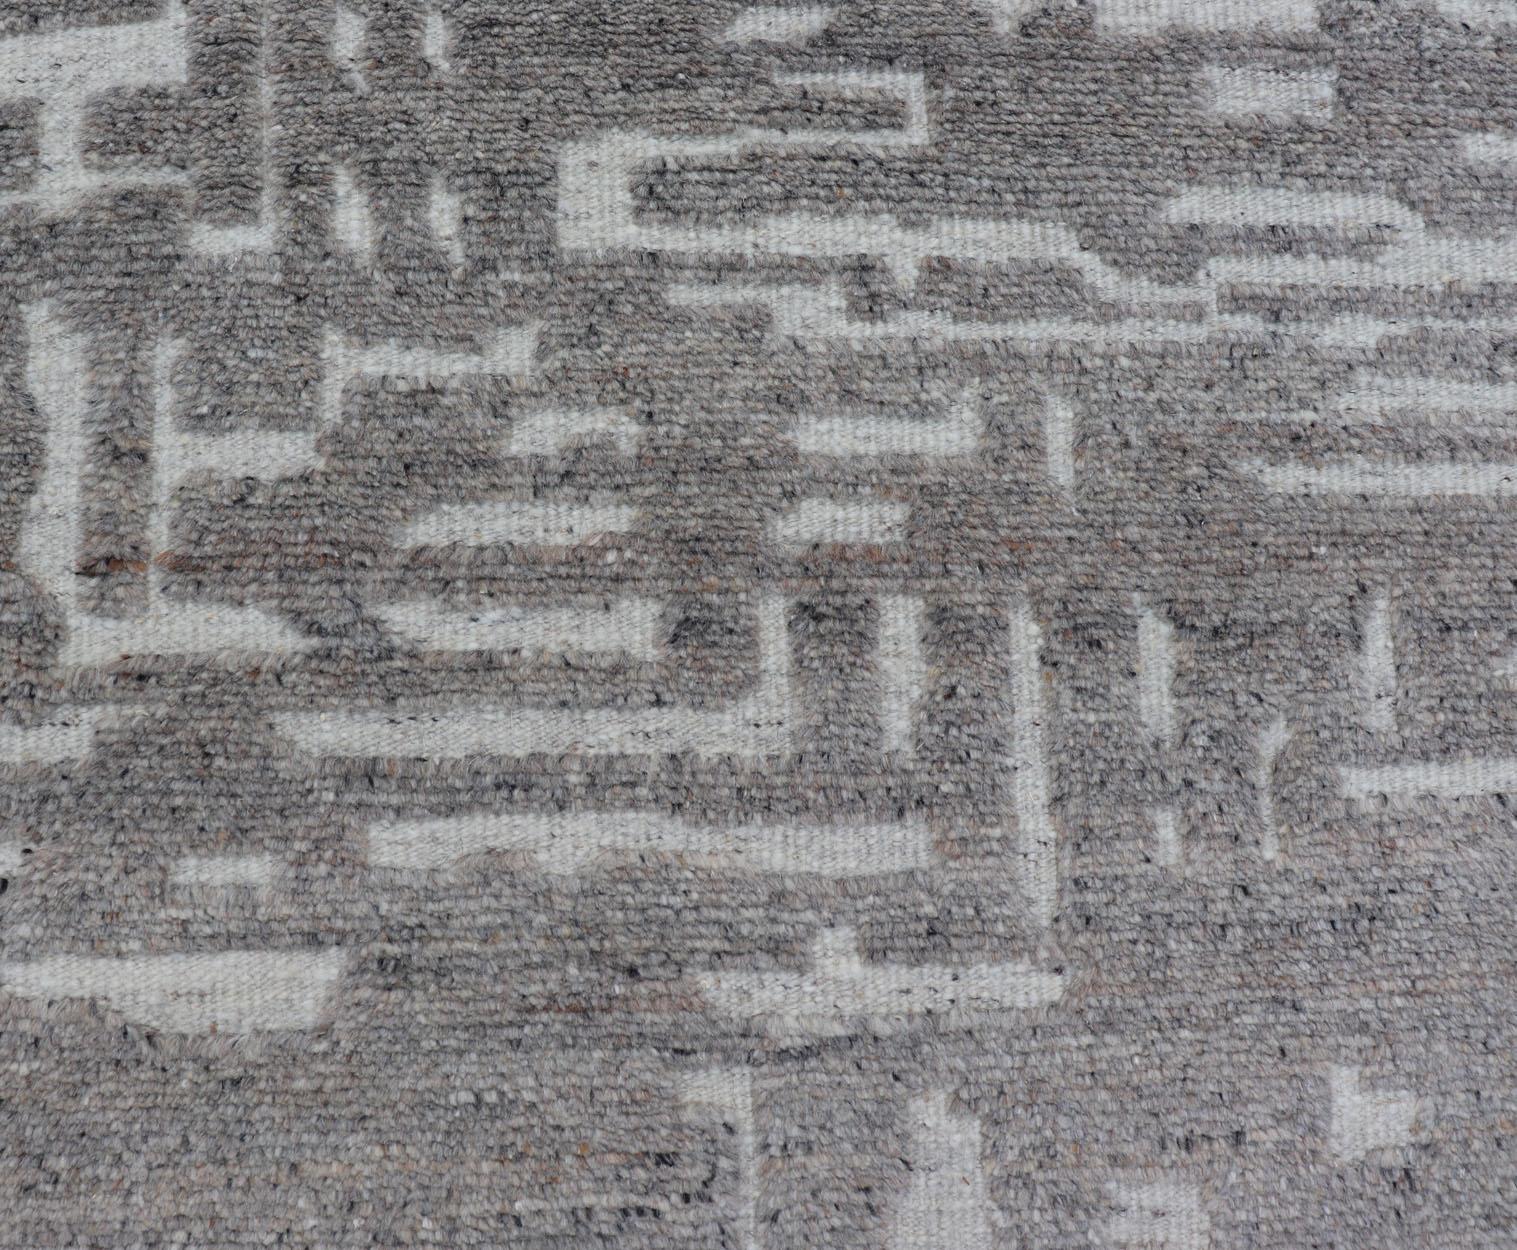 Mesures 5'8 x 8'5 

Le champ présente un motif abstrait subgéométrique qui couvre la totalité du tapis dans des tons de gris clair à Le motif est créé en abaissant les poils du gris clair et de la crème, ce qui donne au tapis une texture unique de